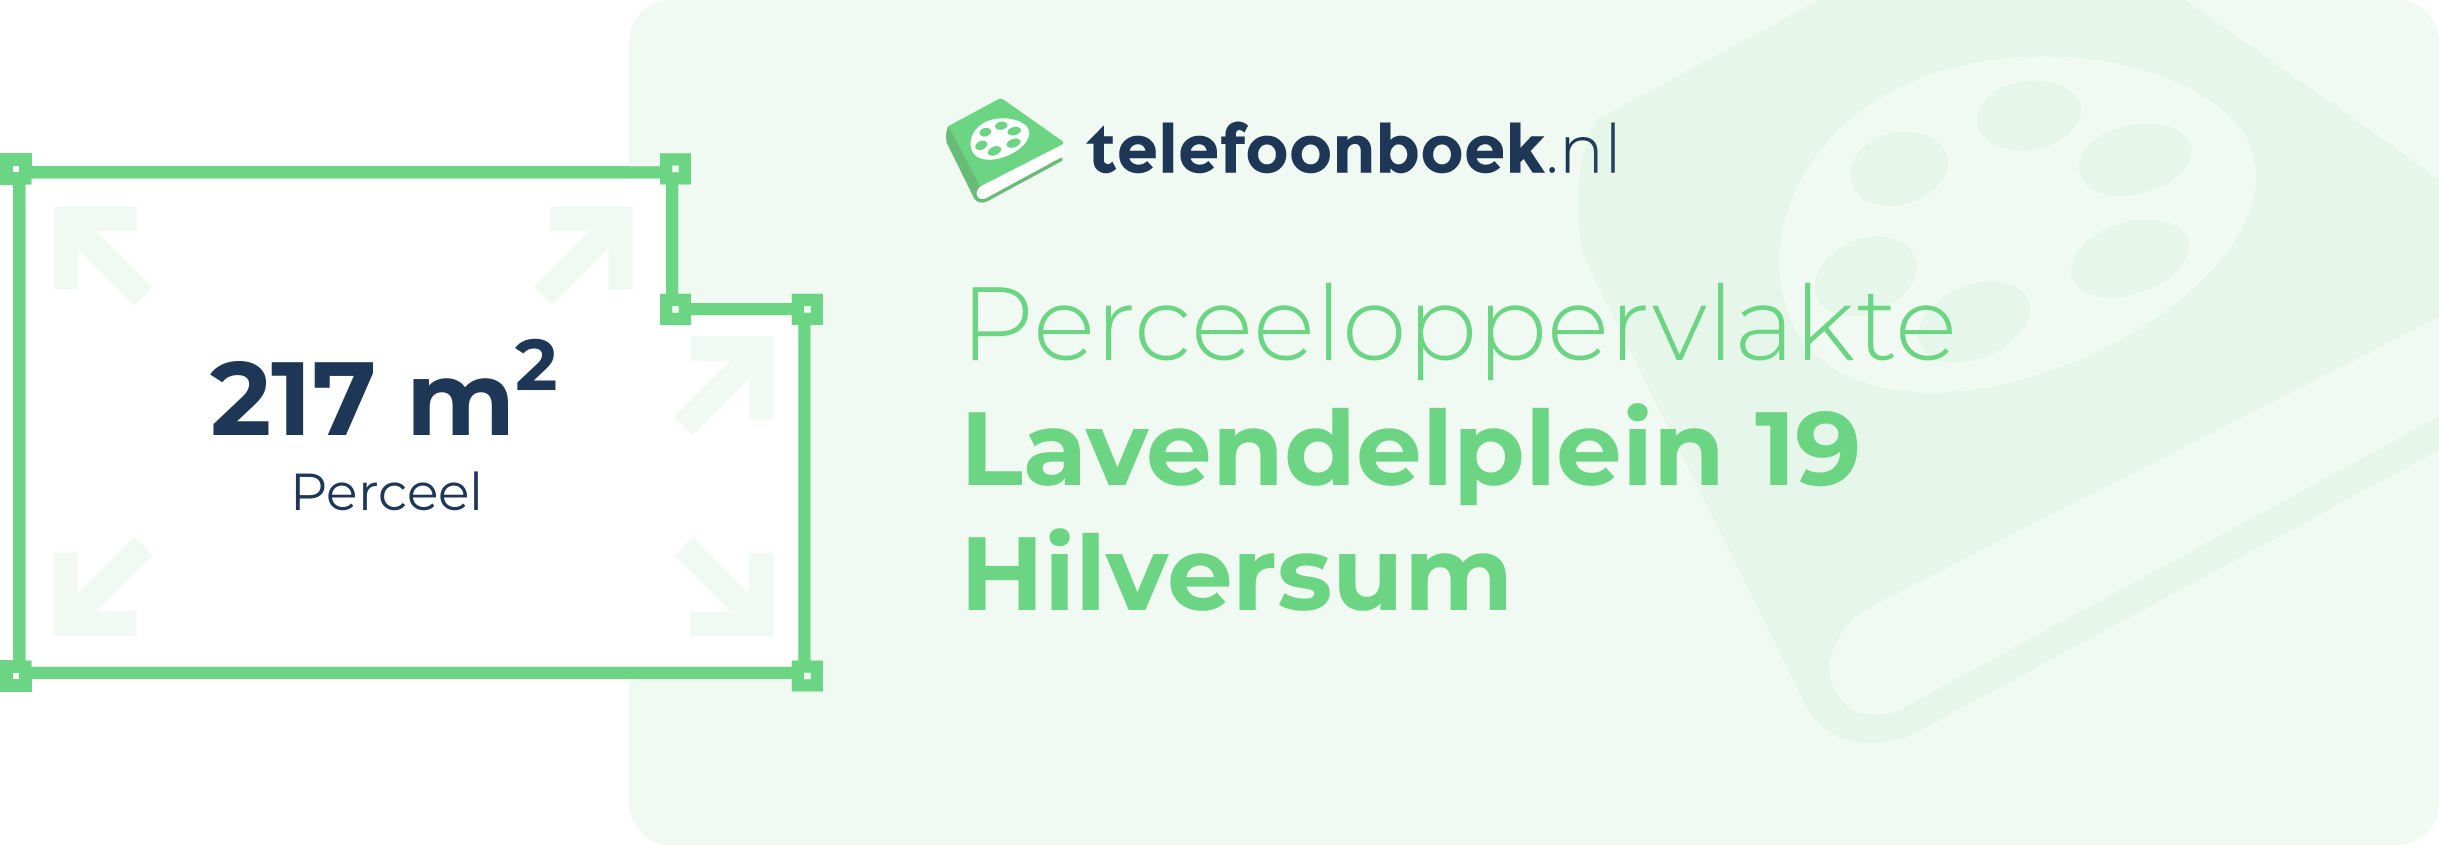 Perceeloppervlakte Lavendelplein 19 Hilversum